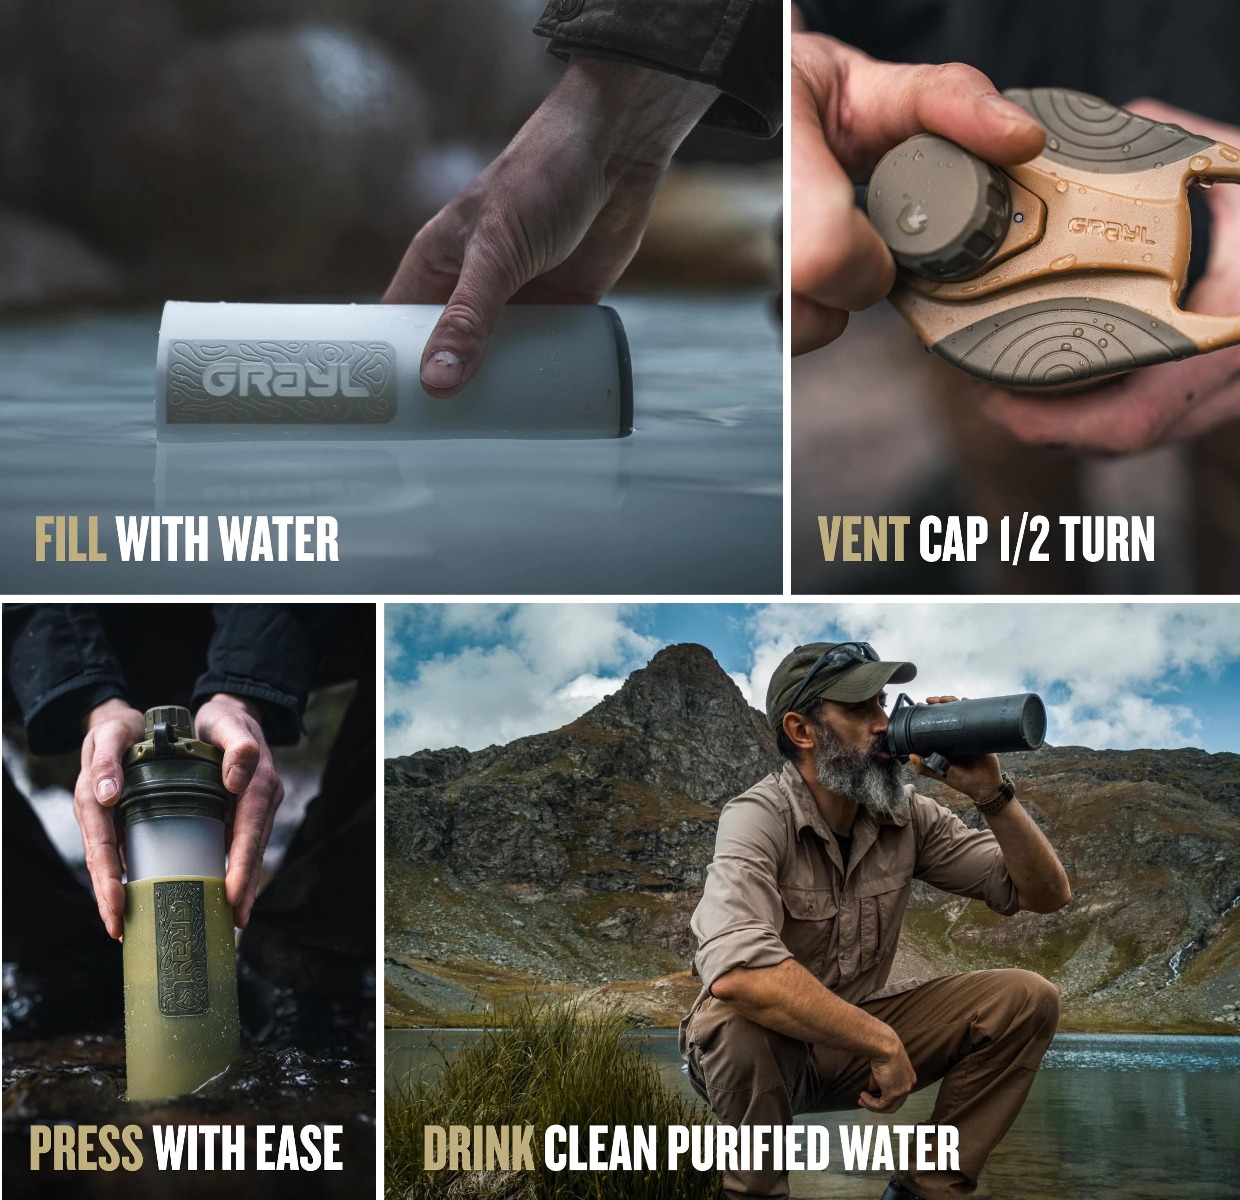 Vodni filter geopressr purifier covert edition olive drap je idealen za čistejšo vodo na poti. Kompakten, zanesljiv in ekološki filter za vodo za kampiranje in pohodništvo. Zagotavlja hitro filtracijo brez bakterij in mikrobov.